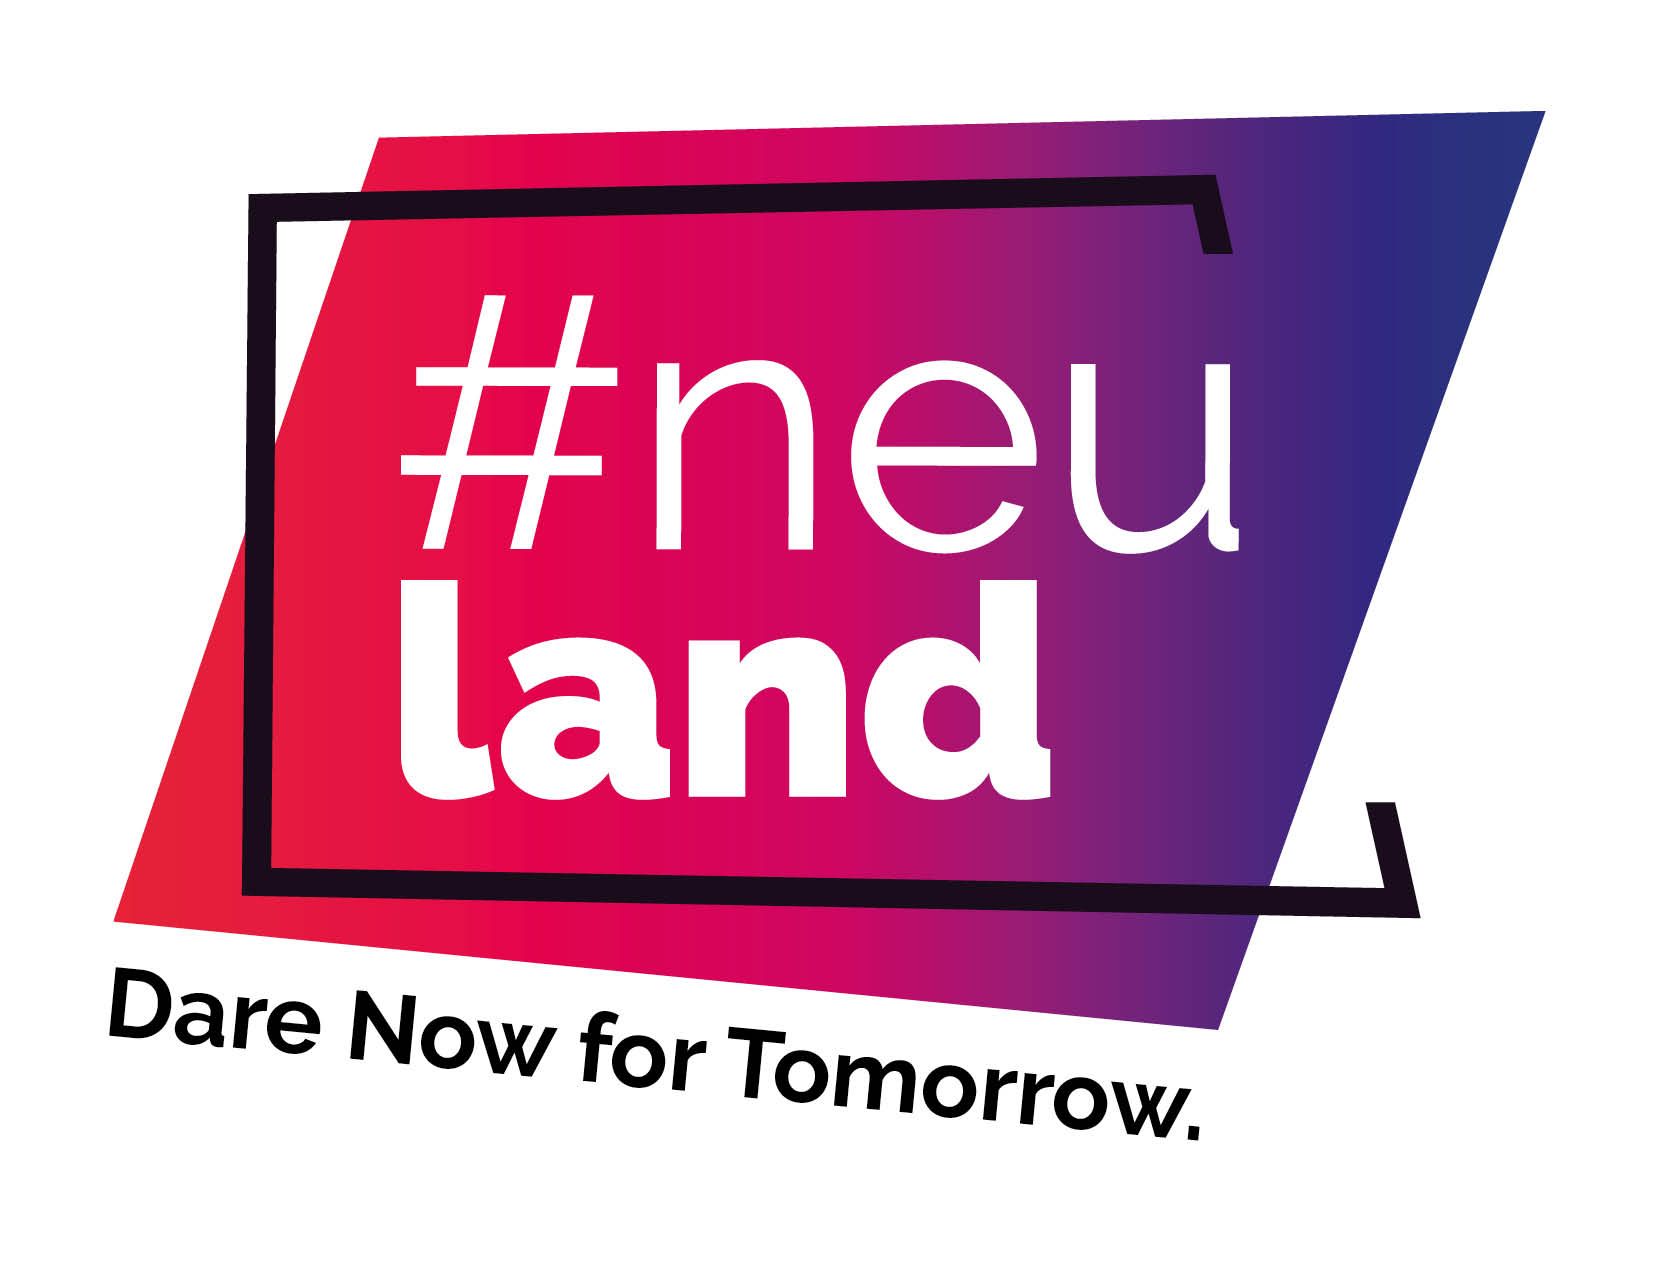 Neuland Logo